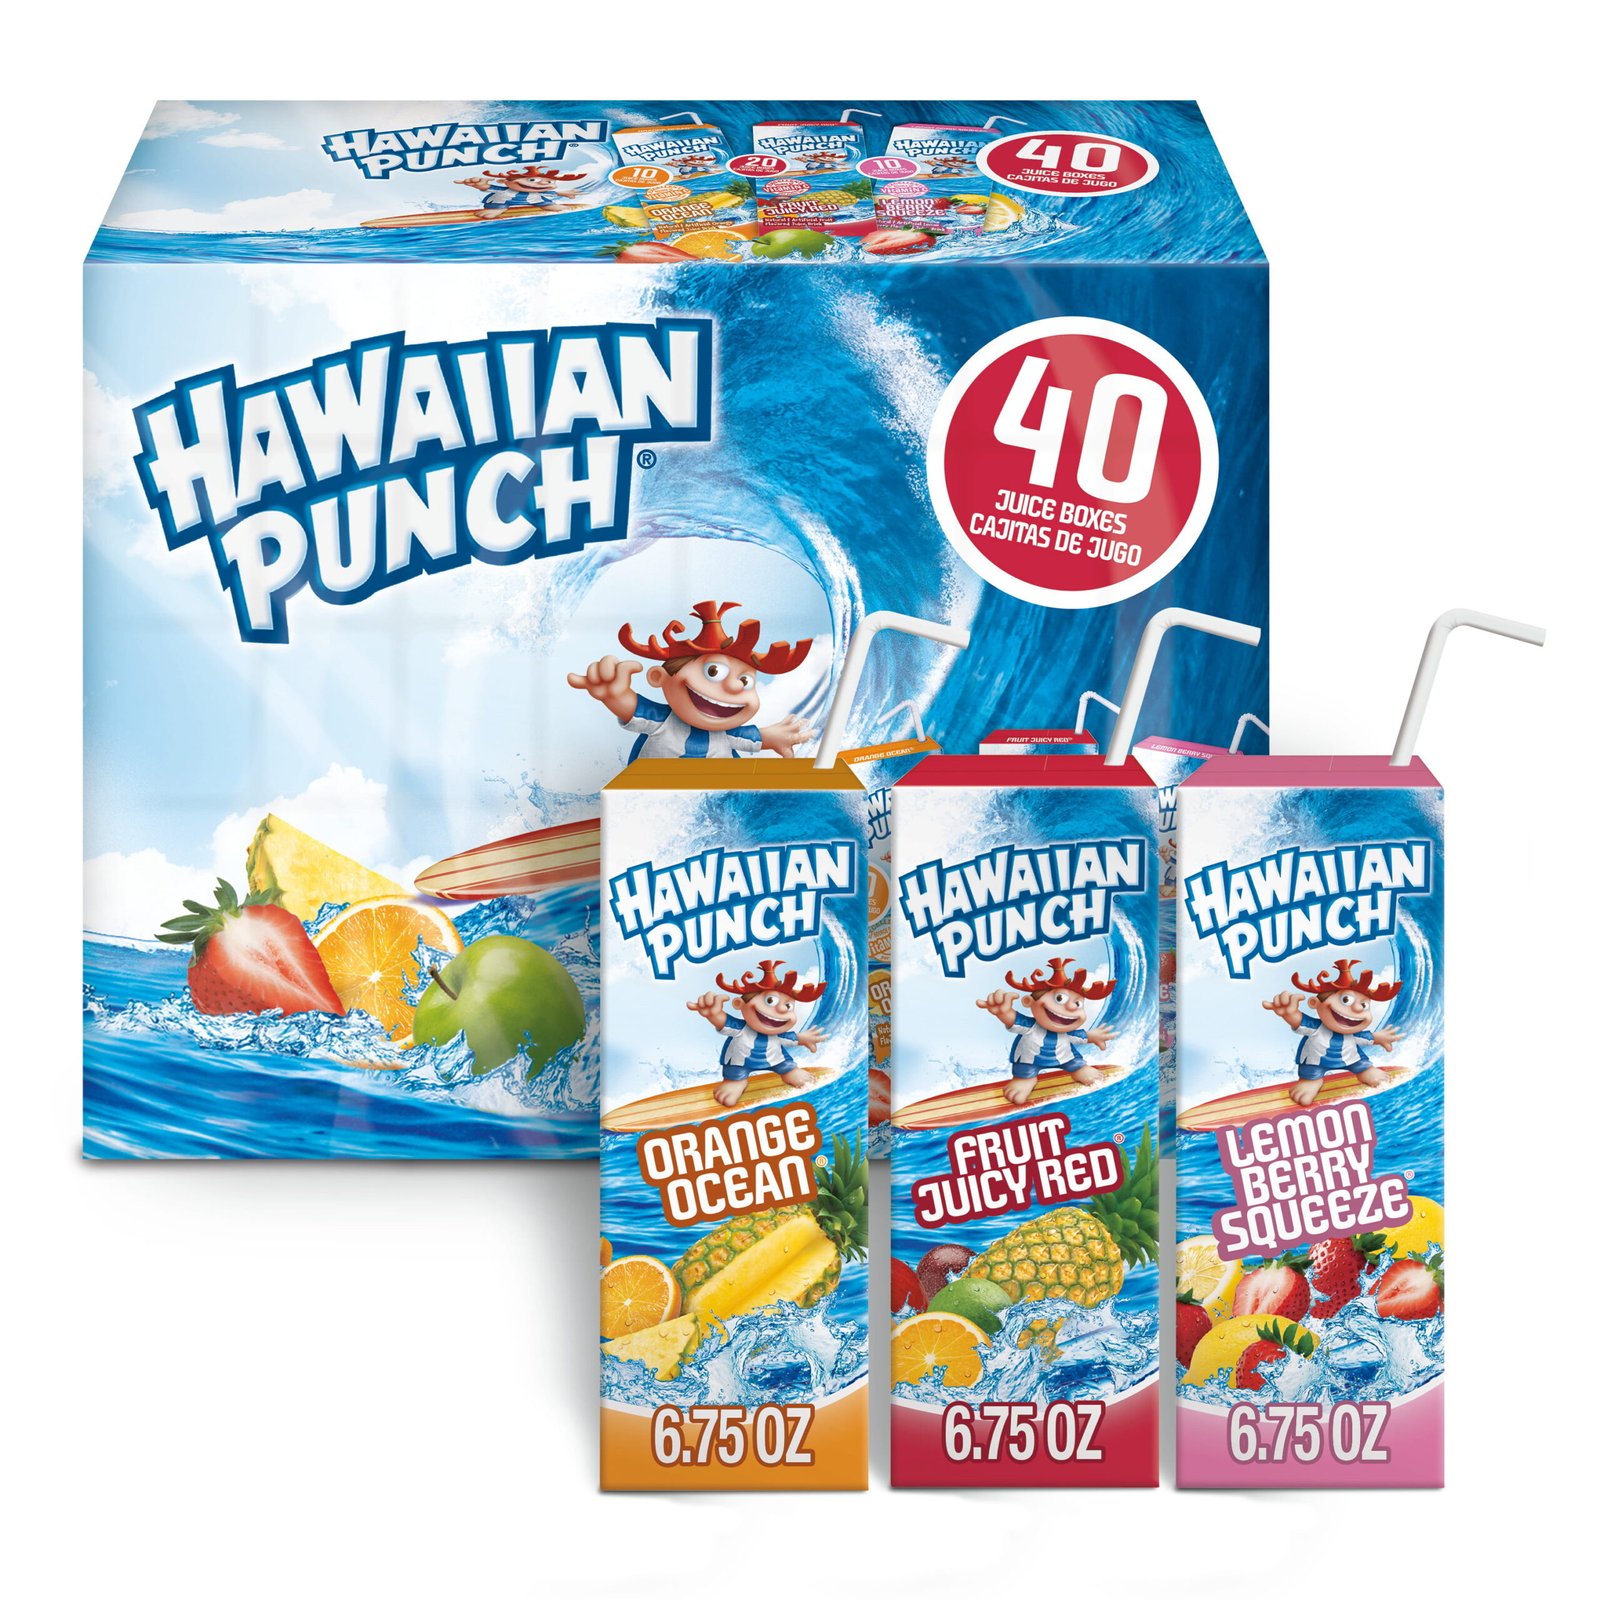 Hawaiian Punch - Hawaiian Punch, Flavored Juice Drink, Berry Blue Typhoon  (1 gl), Shop